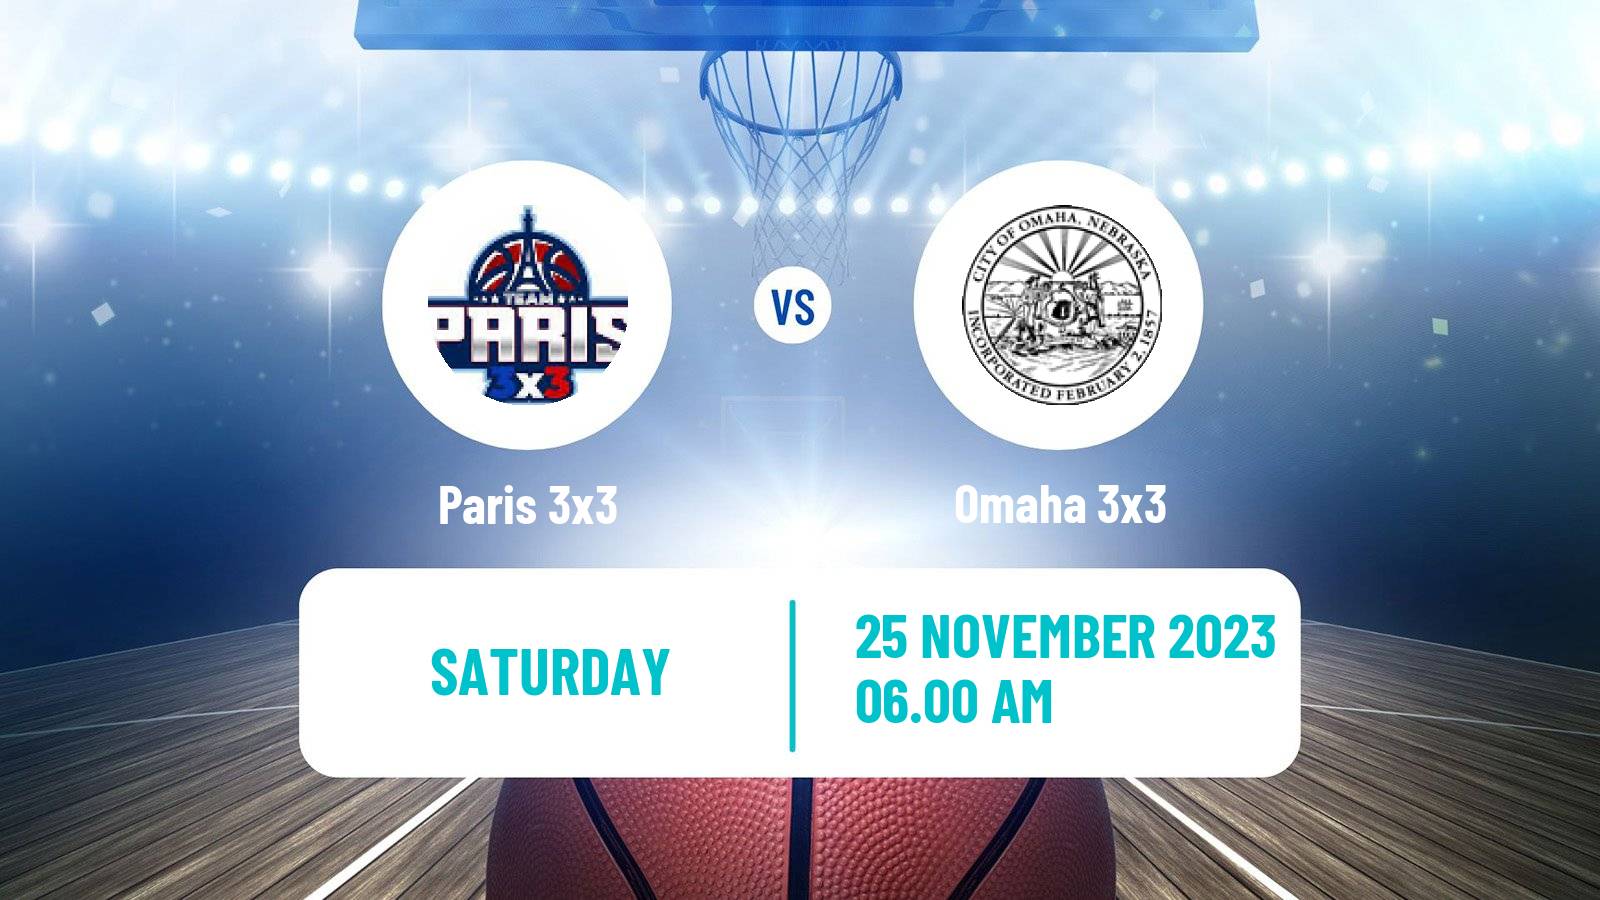 Basketball World Tour Hong Kong 3x3 Paris 3x3 - Omaha 3x3